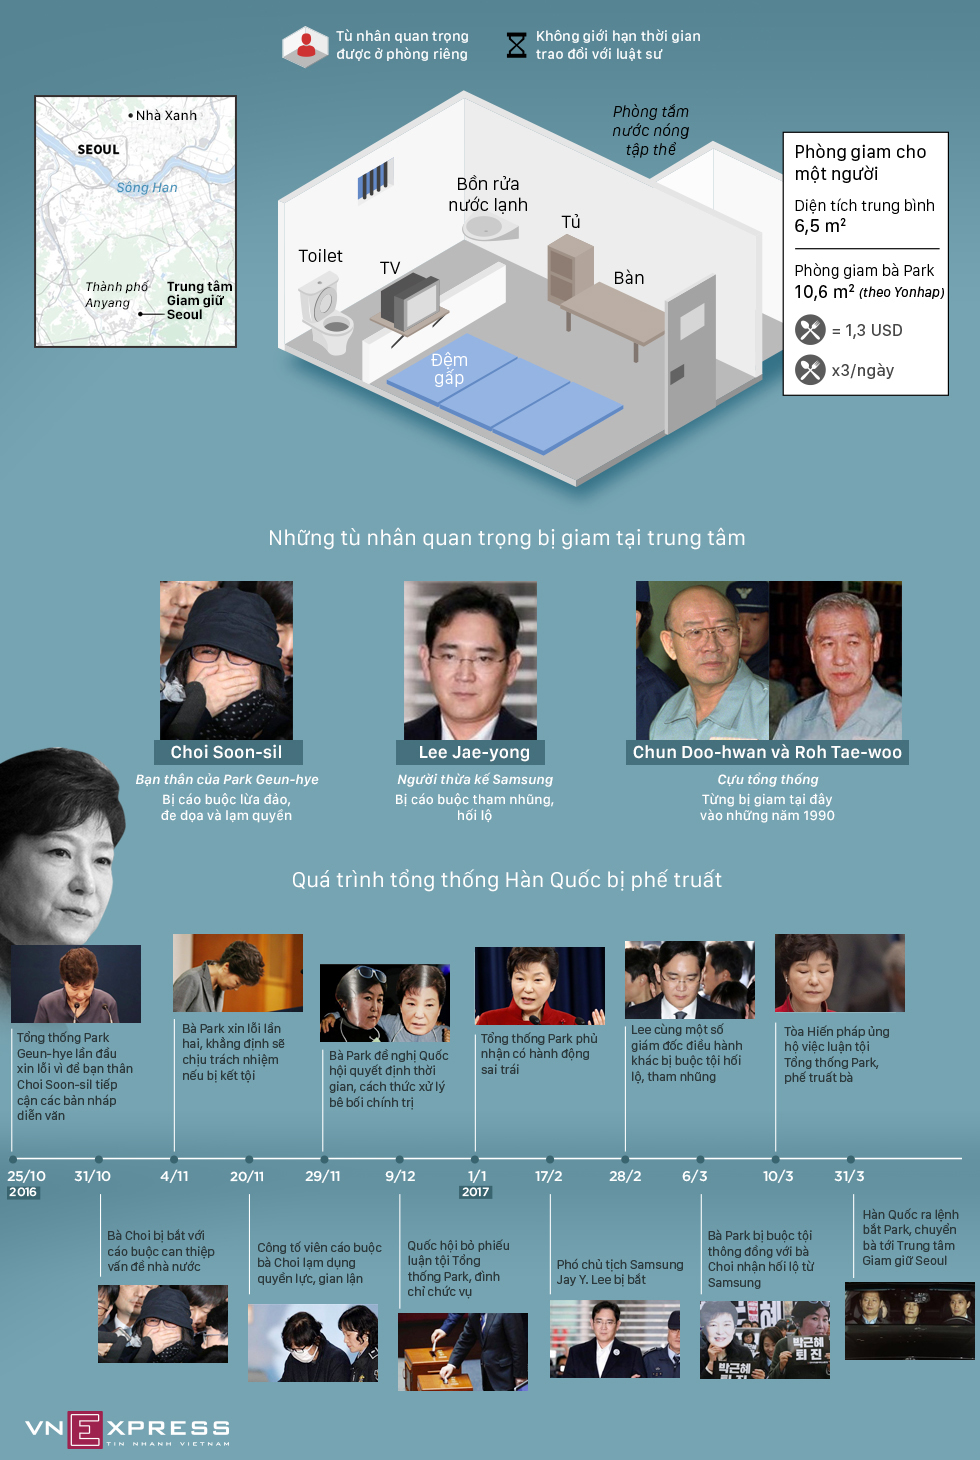 Phòng giam 10,6 m2 của cựu tổng thống Hàn Quốc